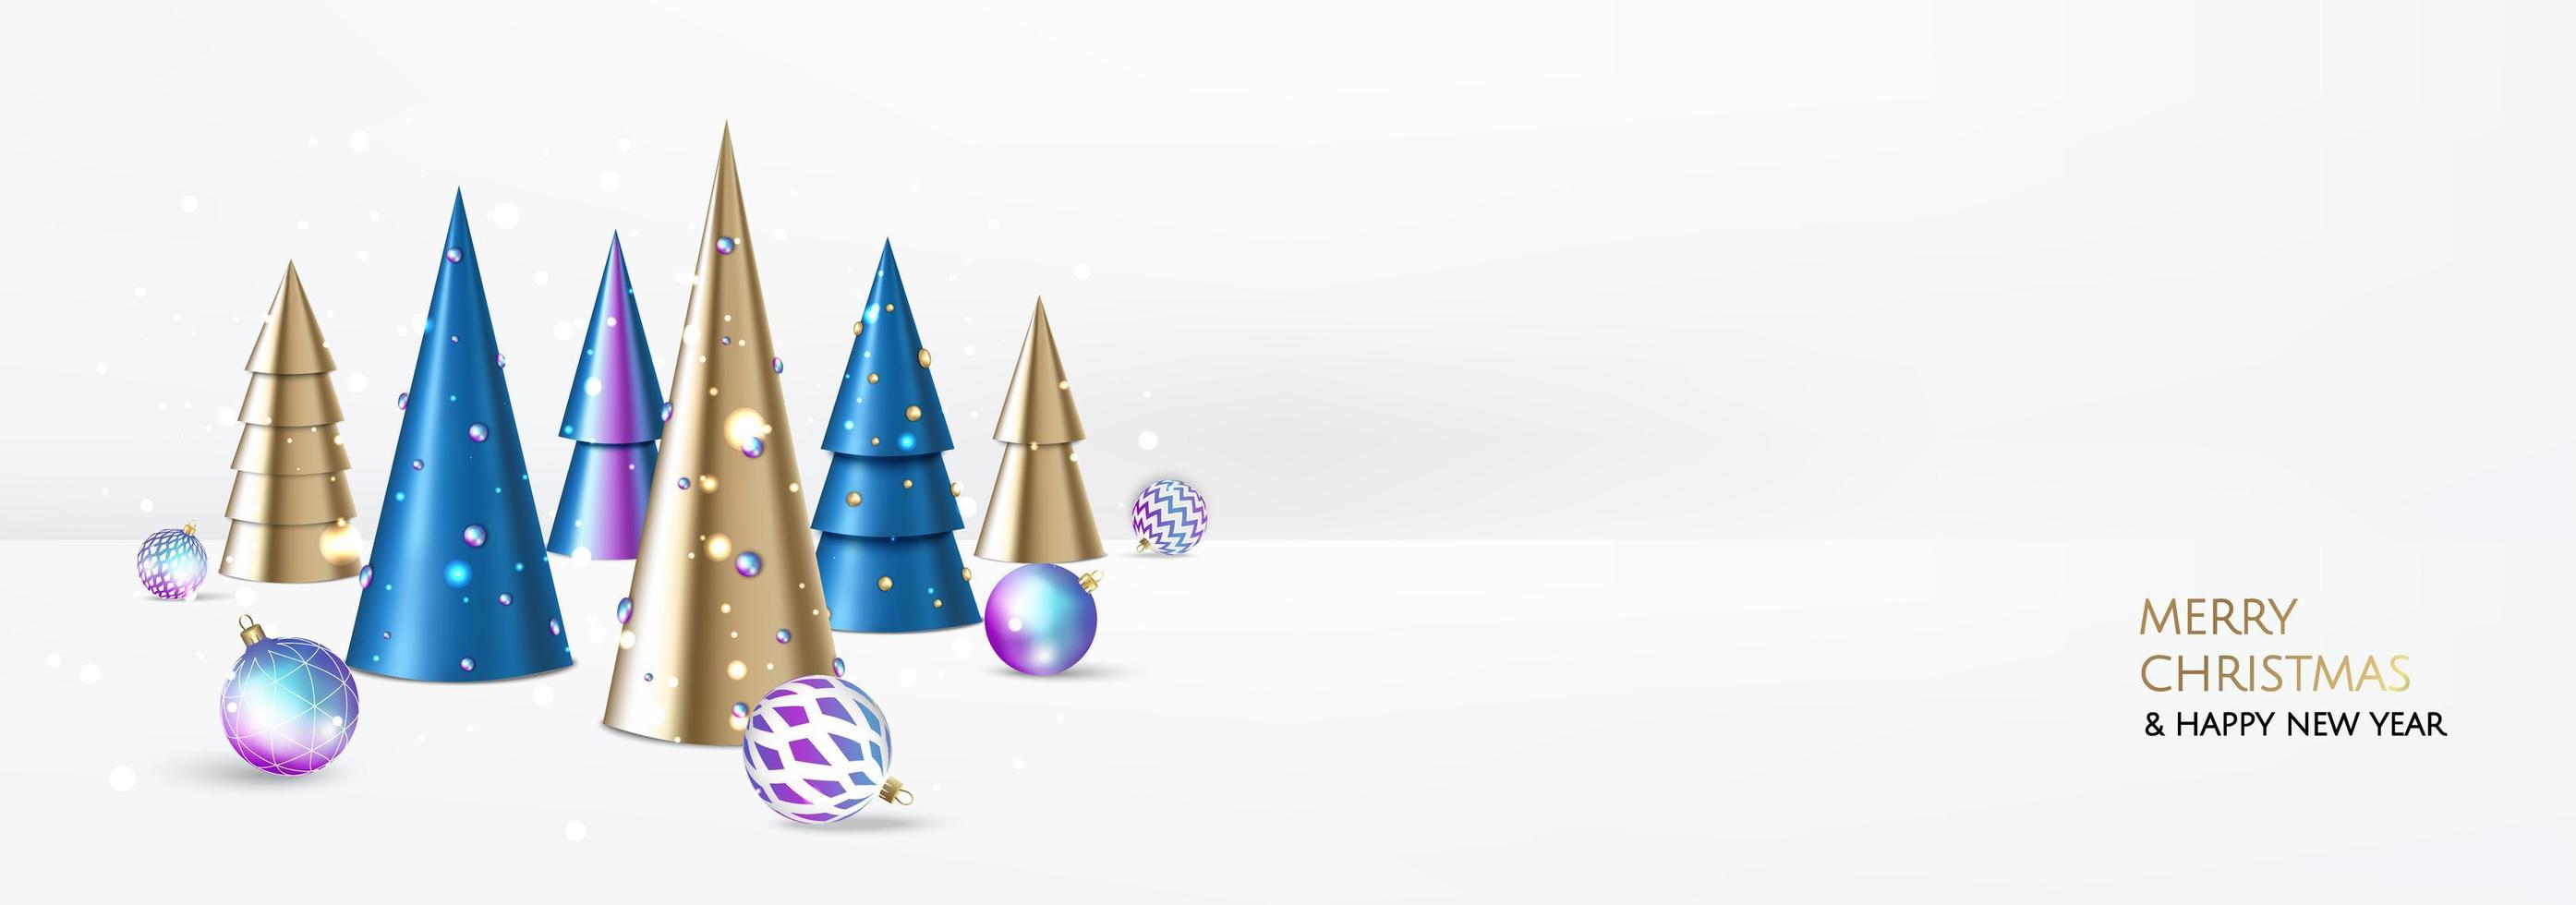 Feliz navidad y próspero año nuevo. Fondo festivo de Navidad con objetos 3d realistas, bolas azules y doradas, árbol de Navidad cónico. composición de diseño de caída de levitación. vector